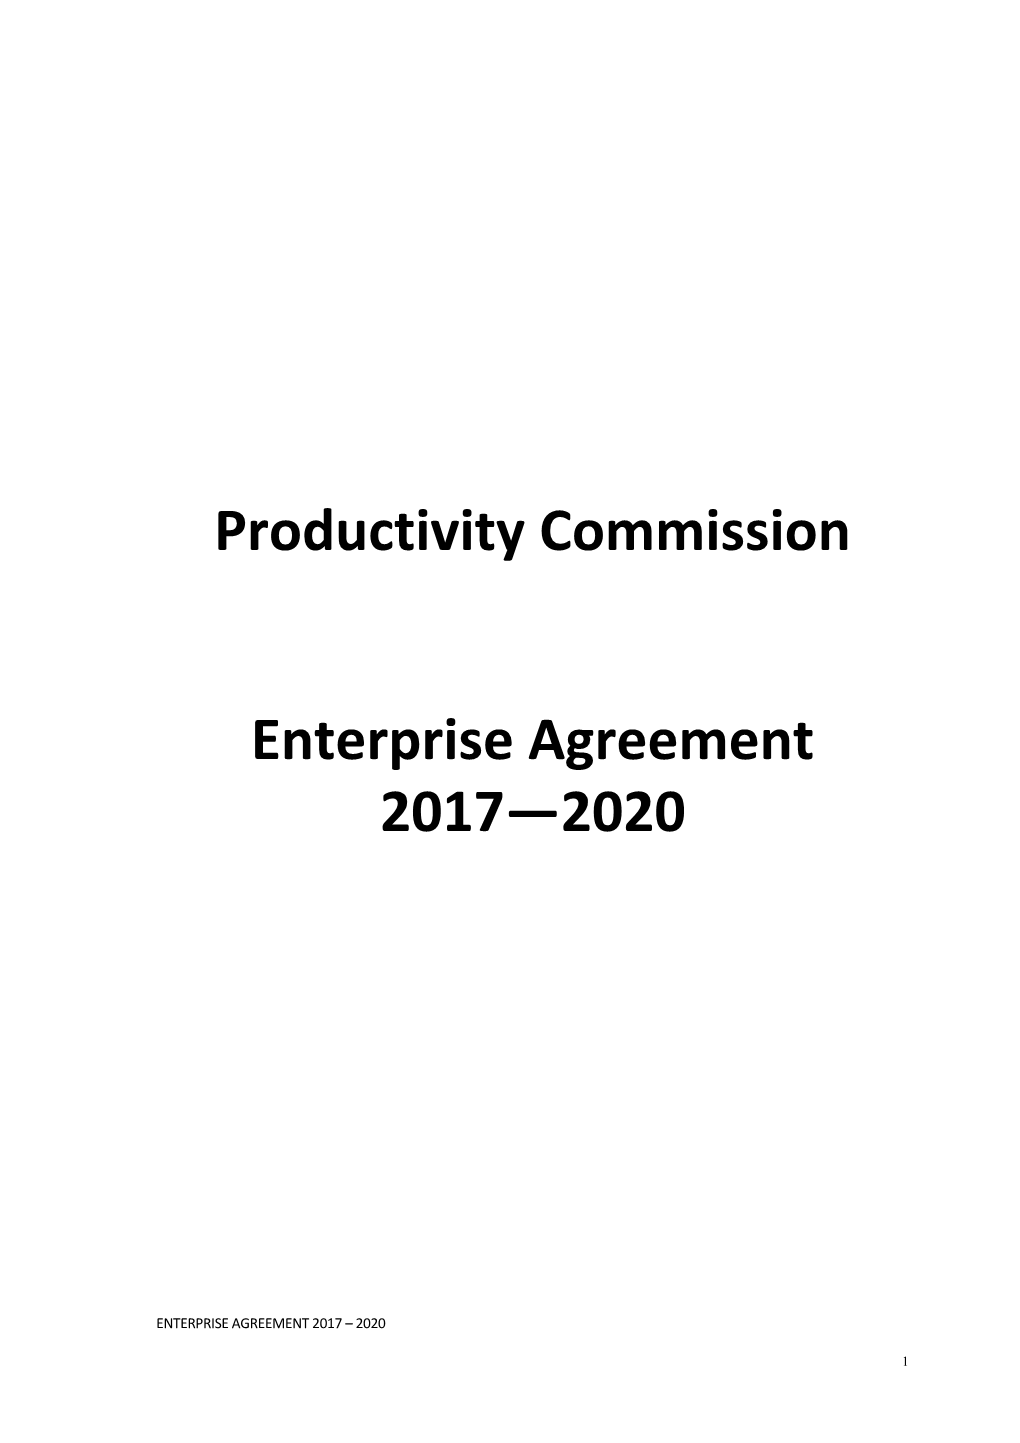 Productivity Commission Enterprise Agreement 2017-2020